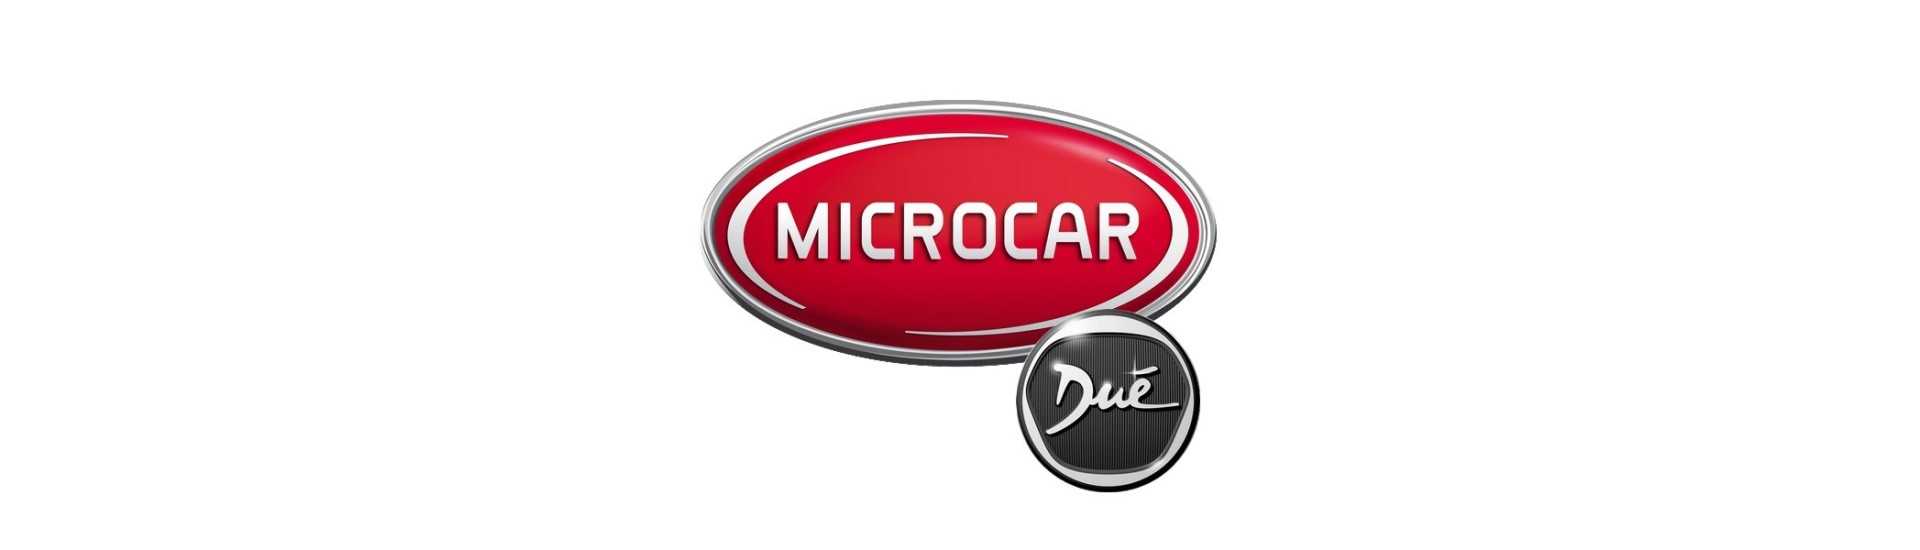 Vuelo al mejor precio para coche sin permiso Microcar Dué